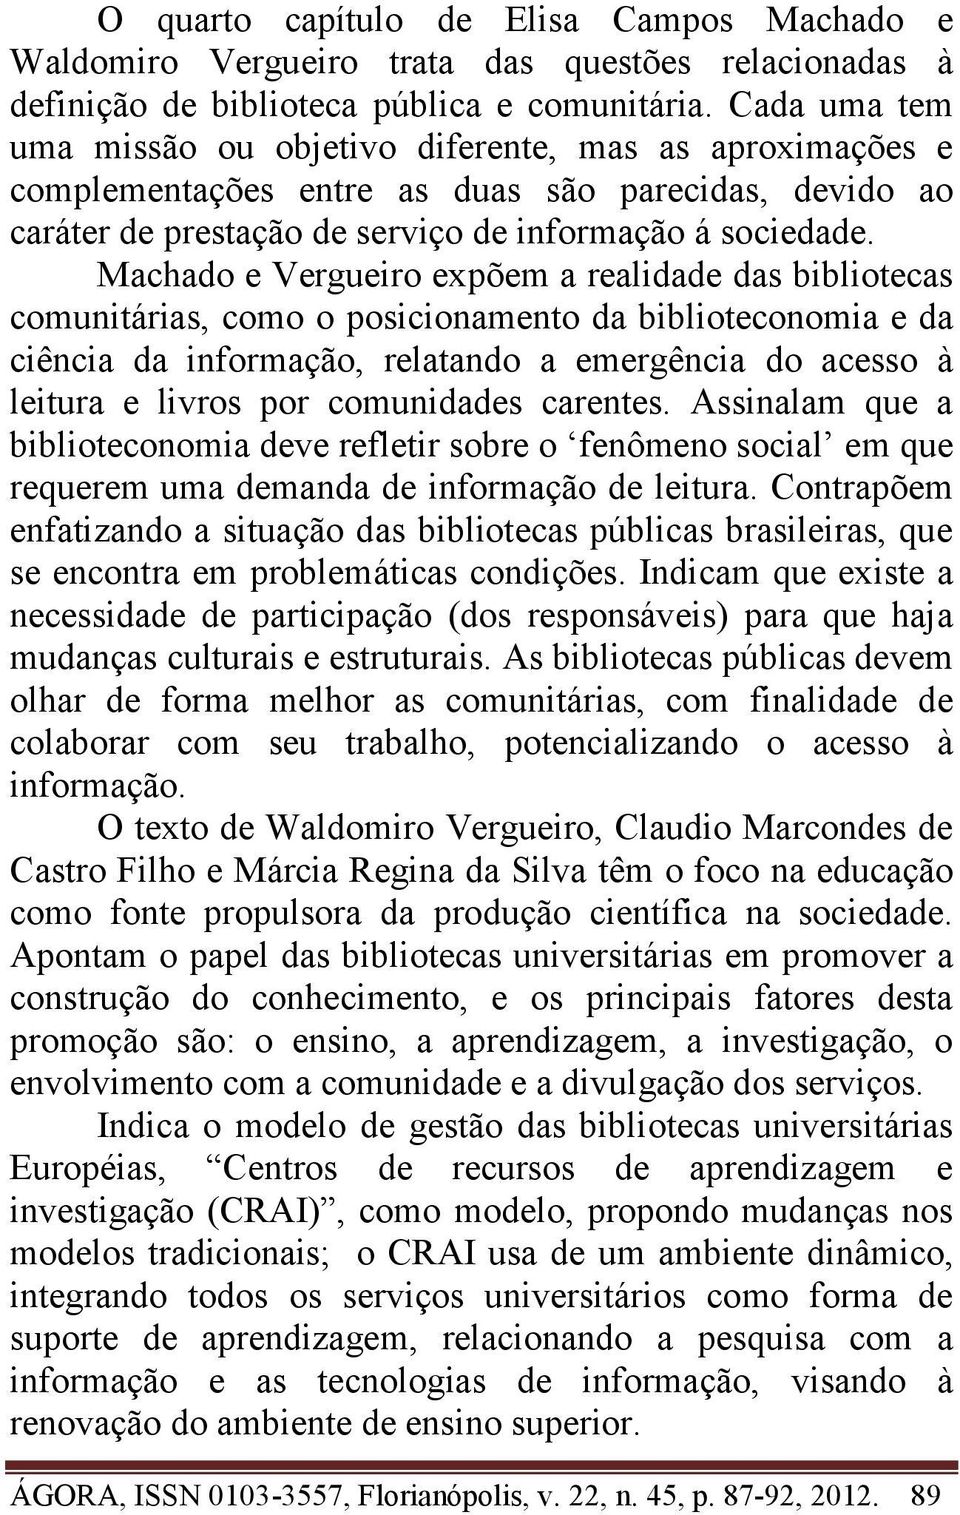 Machado e Vergueiro expõem a realidade das bibliotecas comunitárias, como o posicionamento da biblioteconomia e da ciência da informação, relatando a emergência do acesso à leitura e livros por